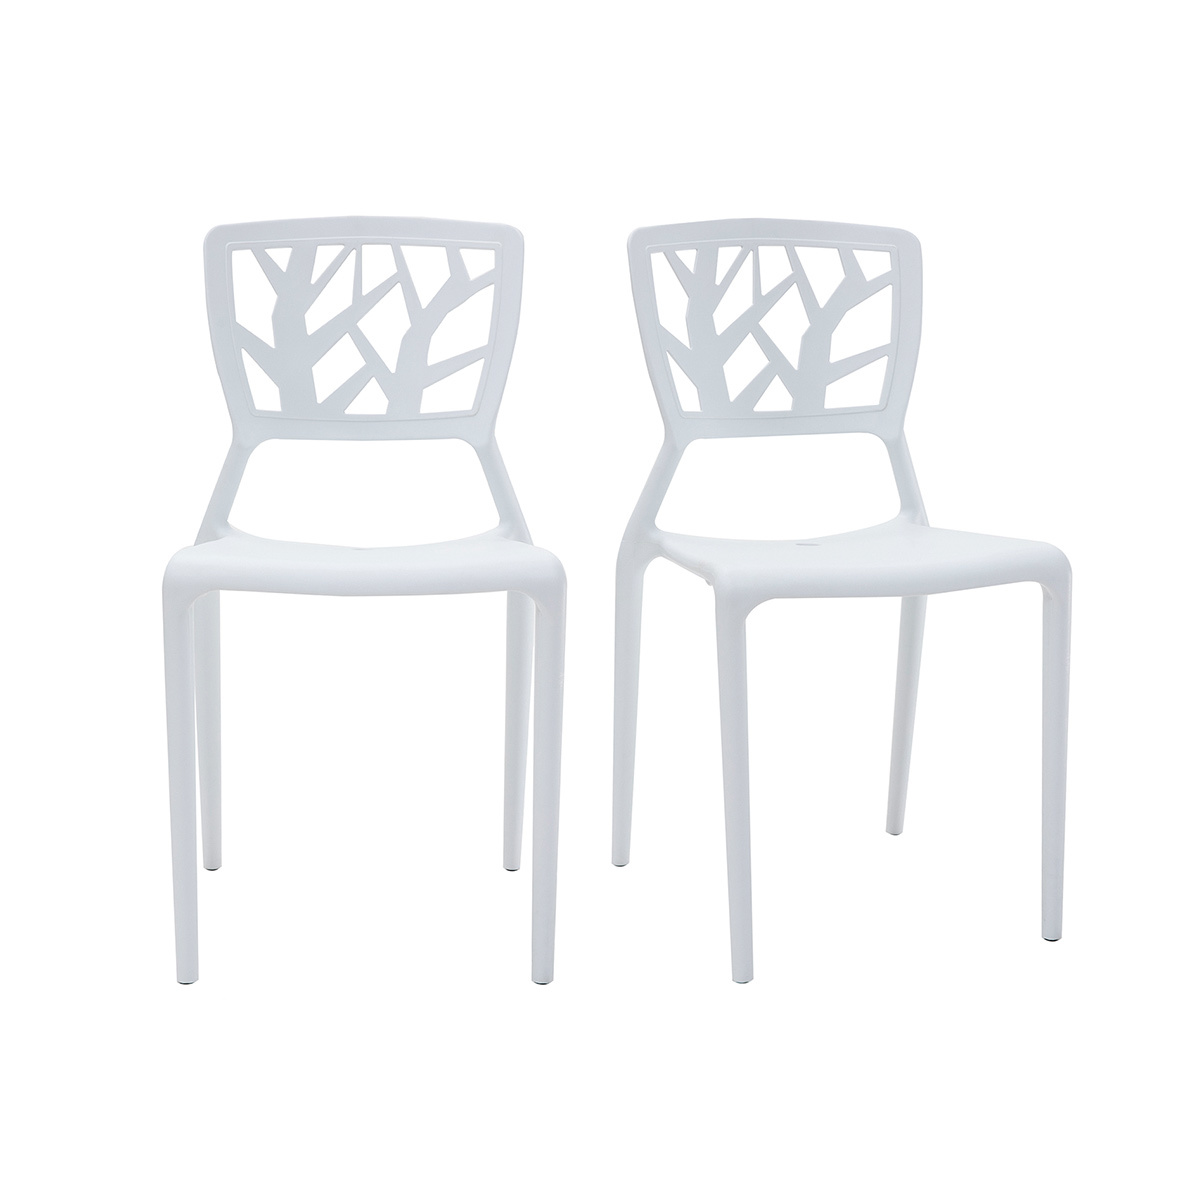 Chaises design blanches empilables intérieur / extérieur (lot de 2) KATIA vue1